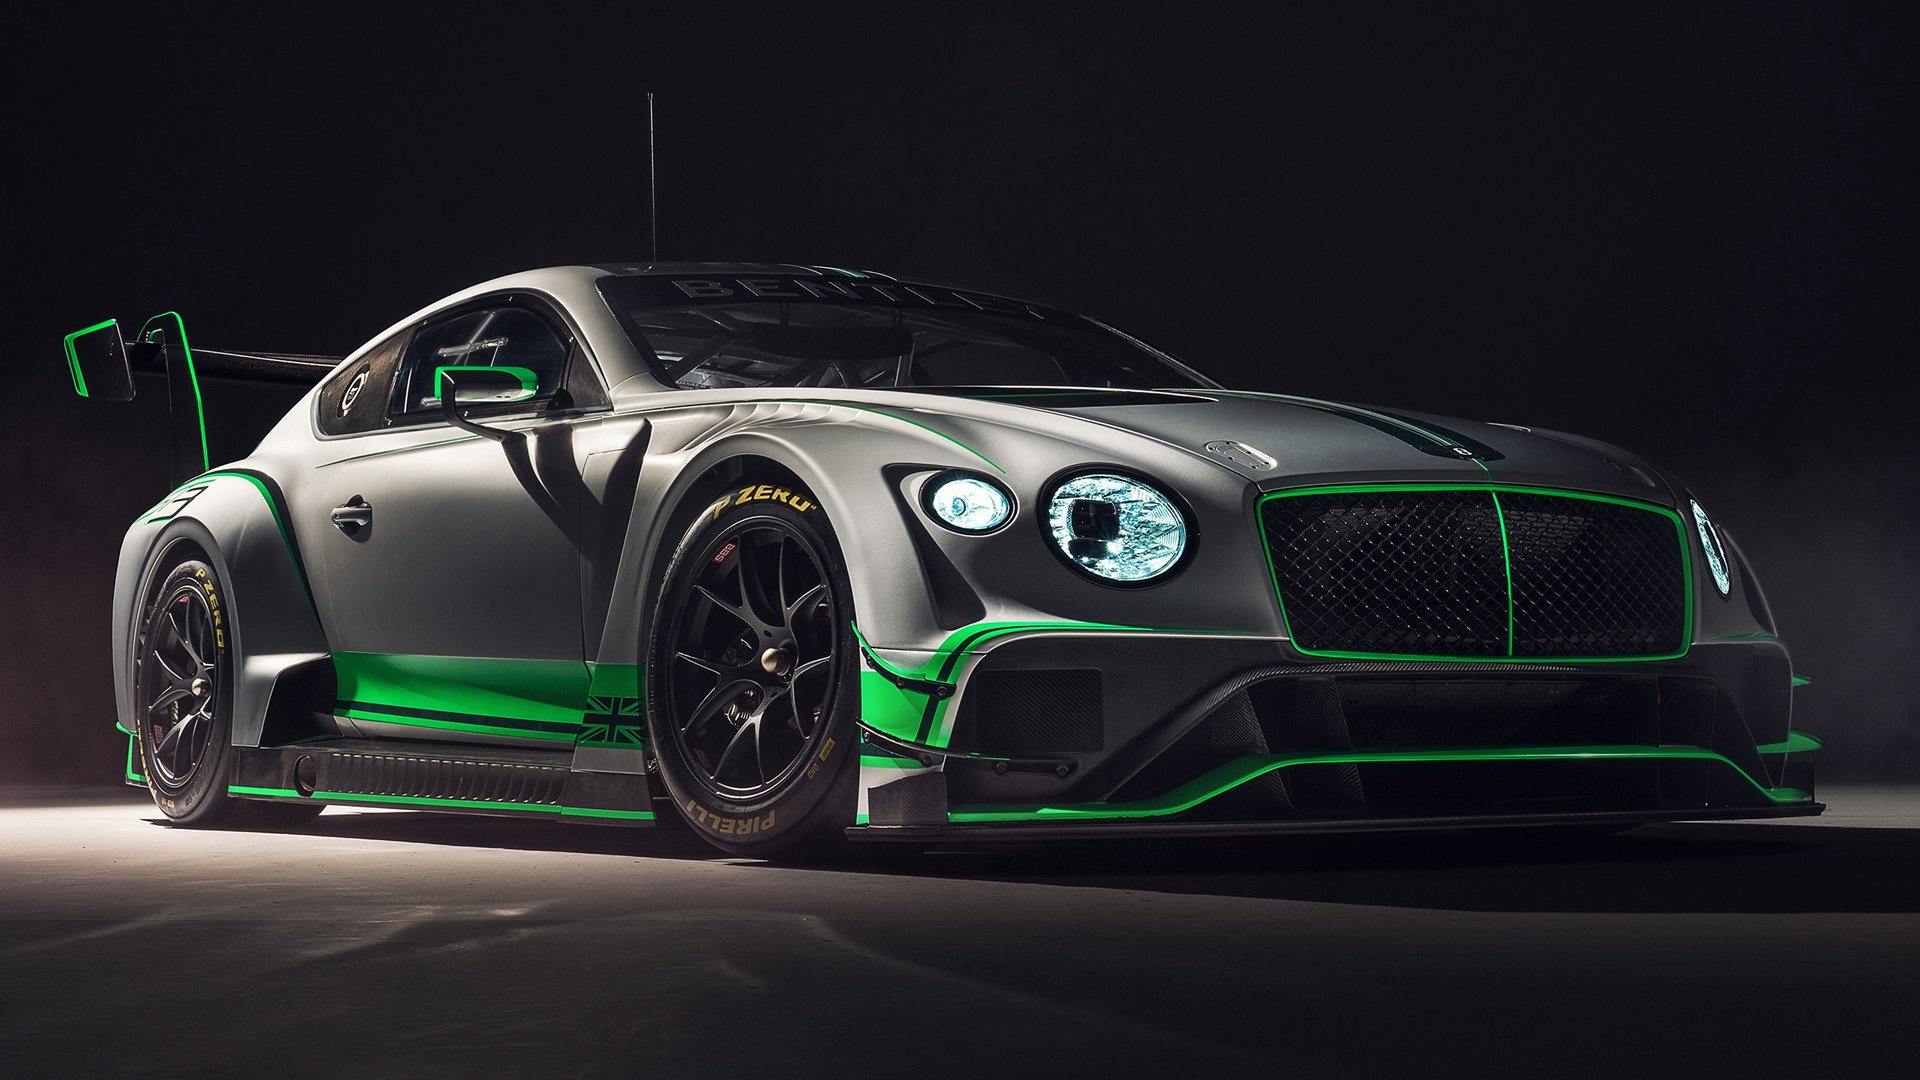 Bentley Wallpapers  Top 25 Best Bentley Backgrounds Download